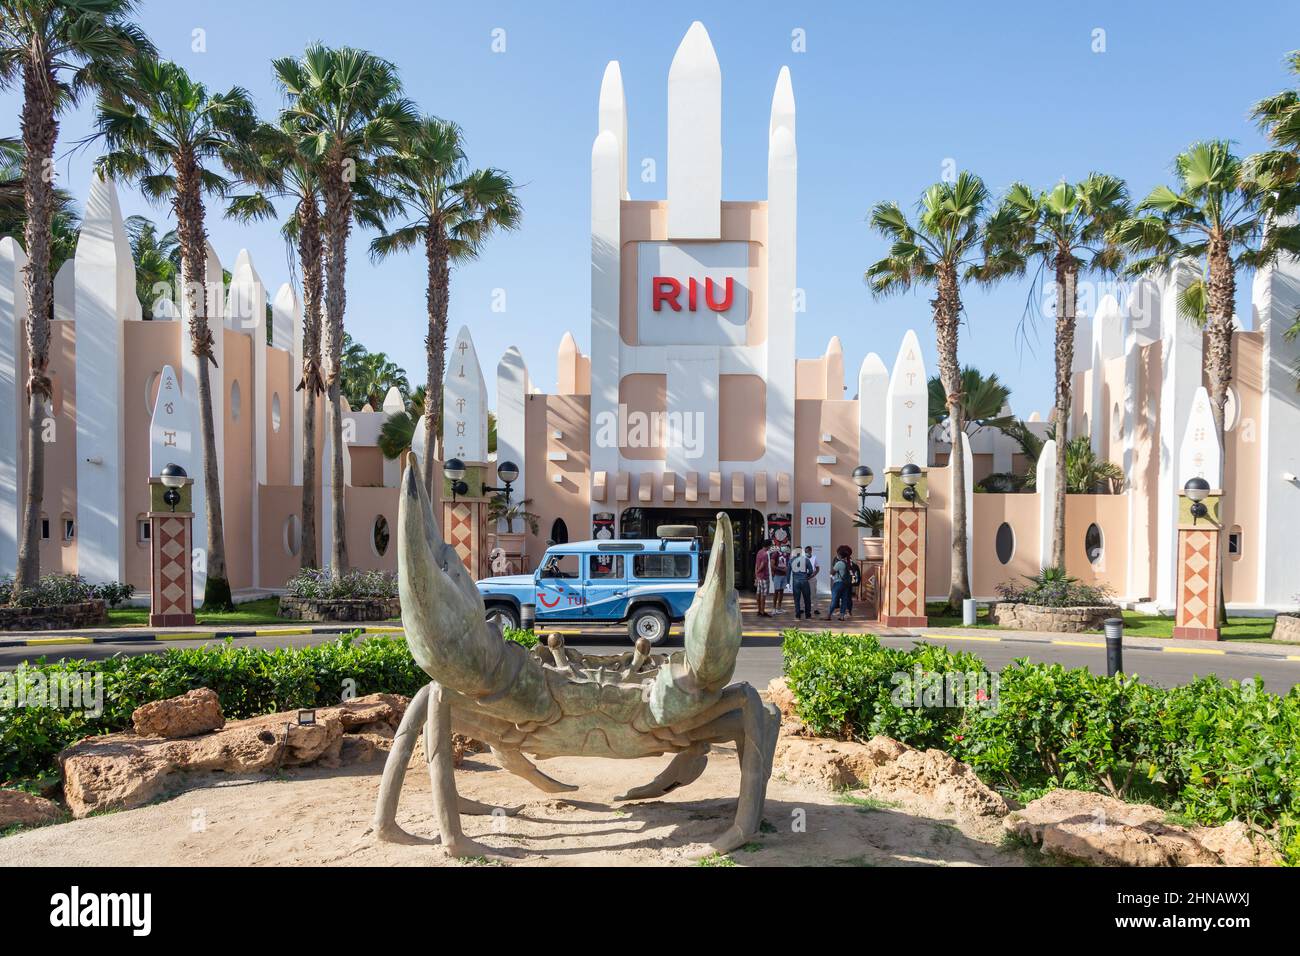 Eintritt zum Rui Funana Hotel, Santa Maria, Sal, República de Cabo (Kap Verde) Stockfoto